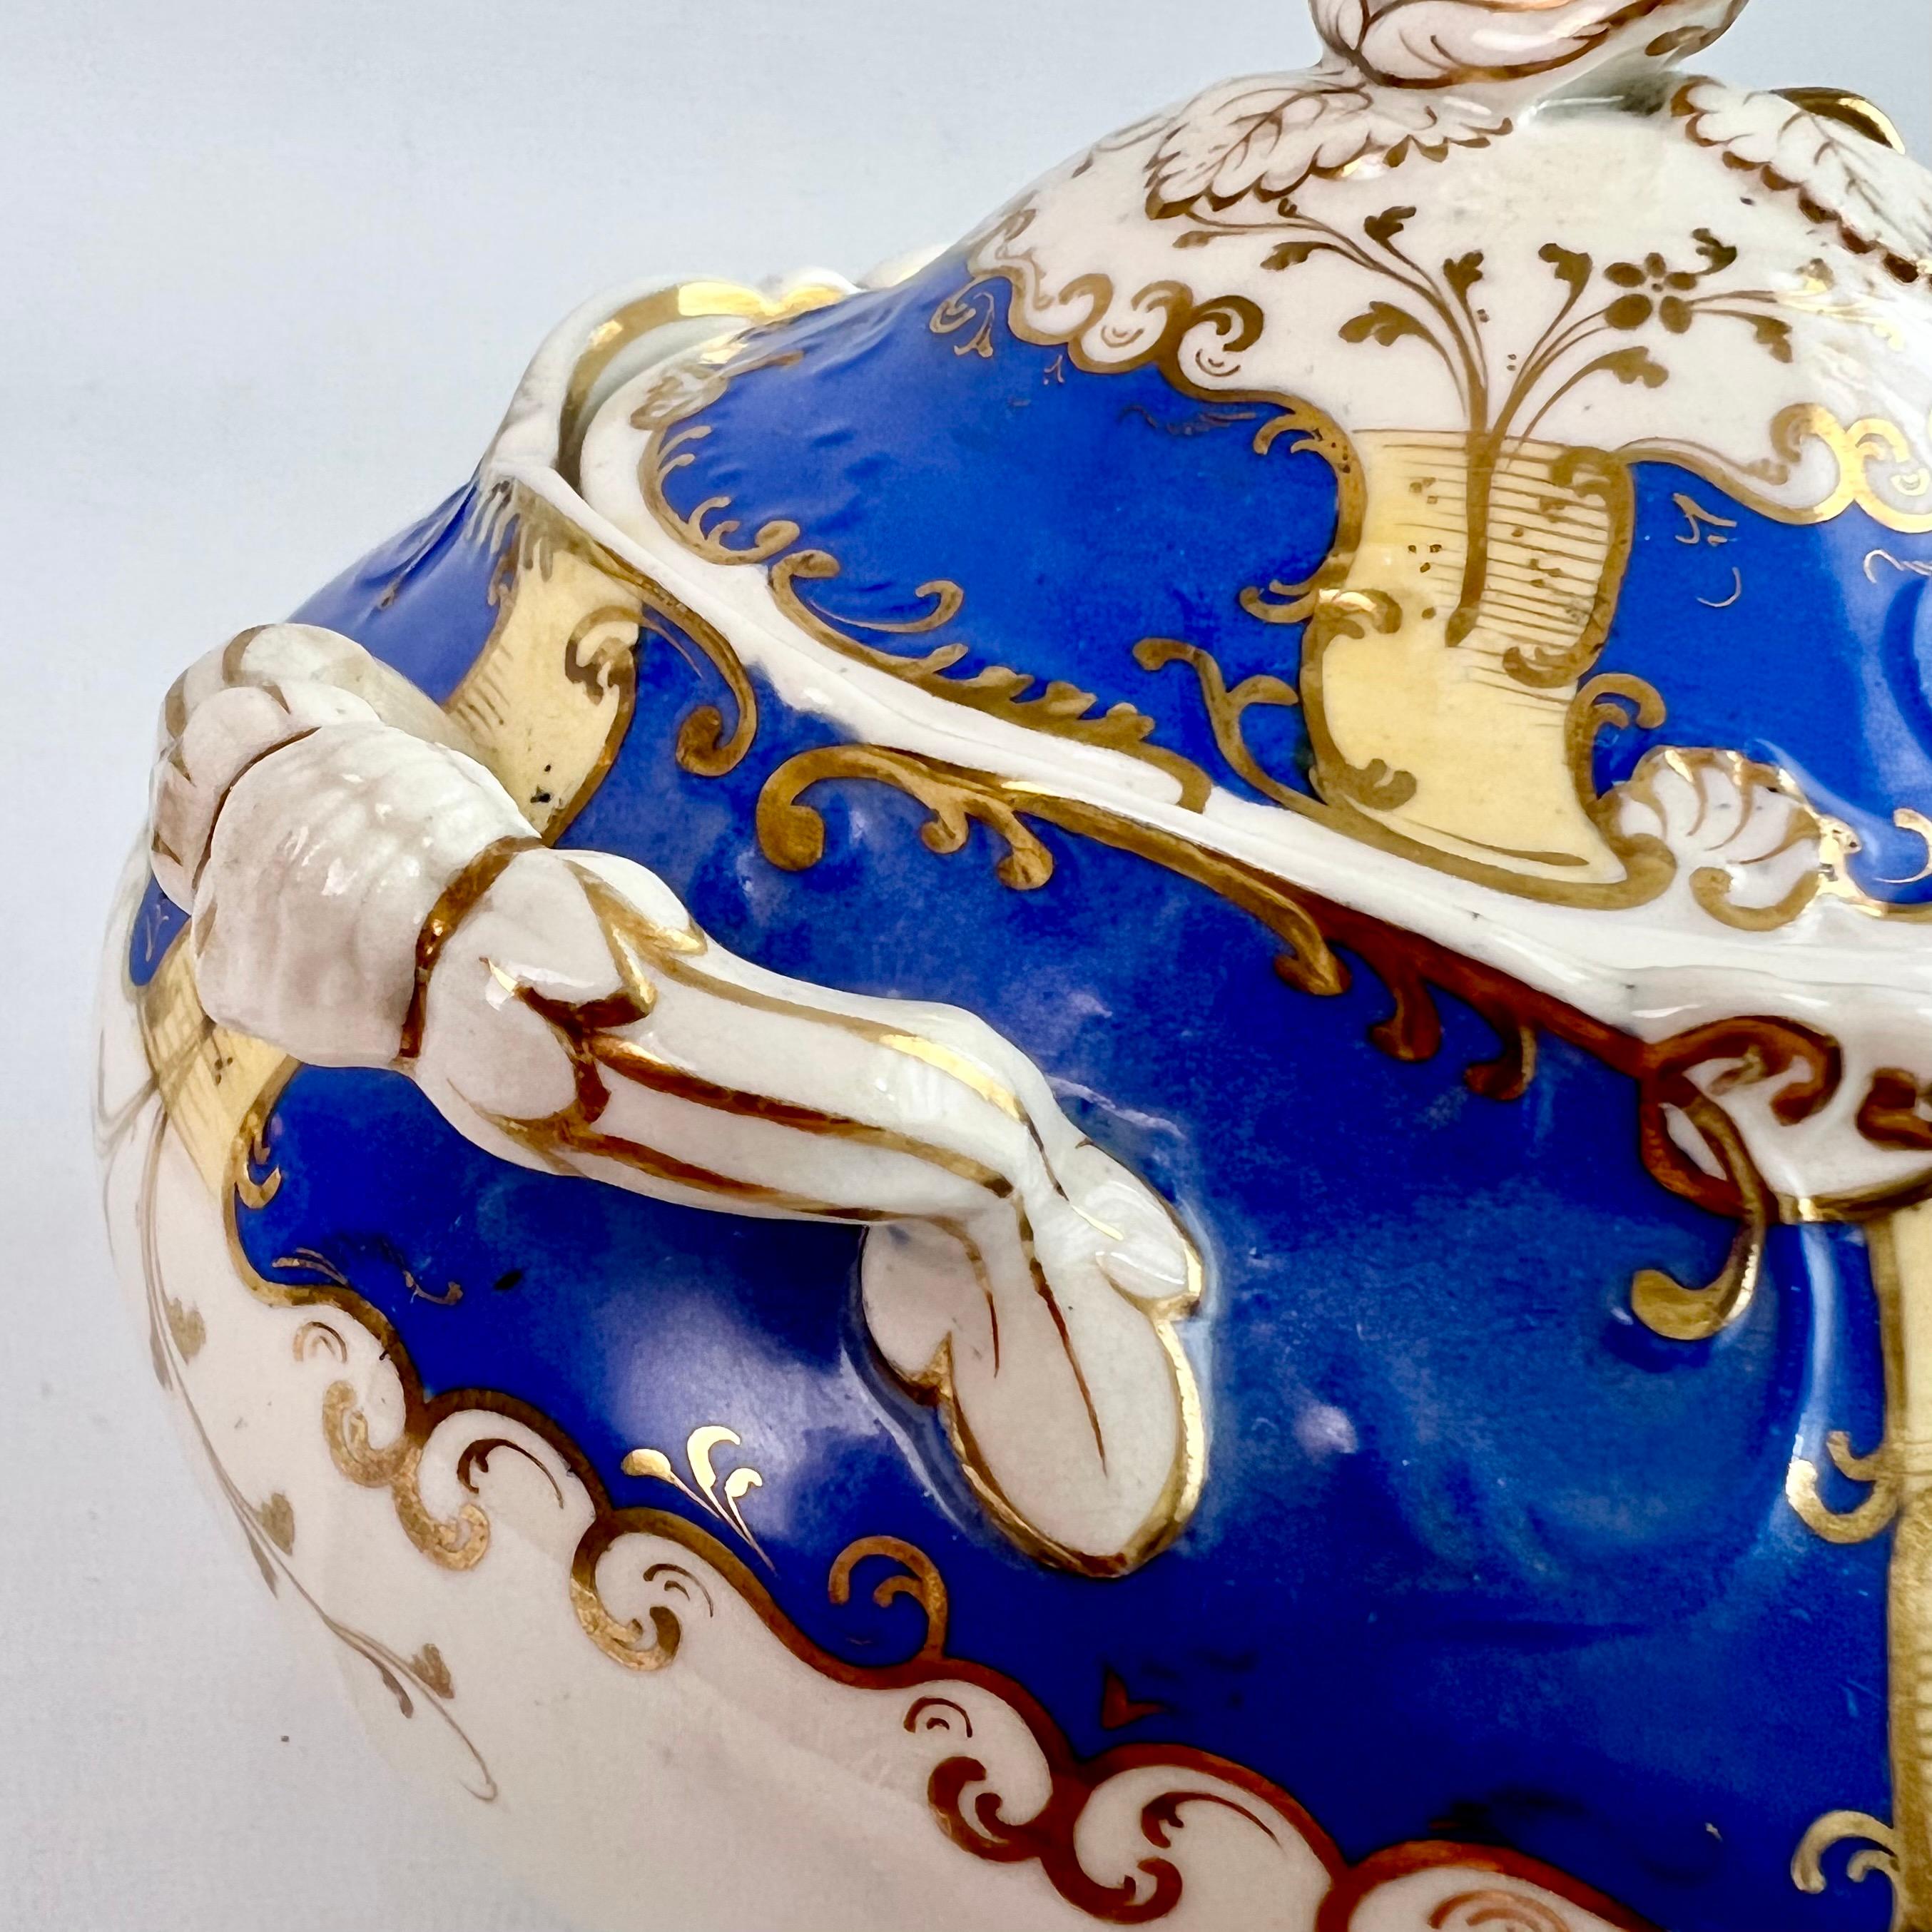 H & R Daniel Porcelain Teapot Set, Royal Blue and Gilt, Rococo Revival, 1831 For Sale 3